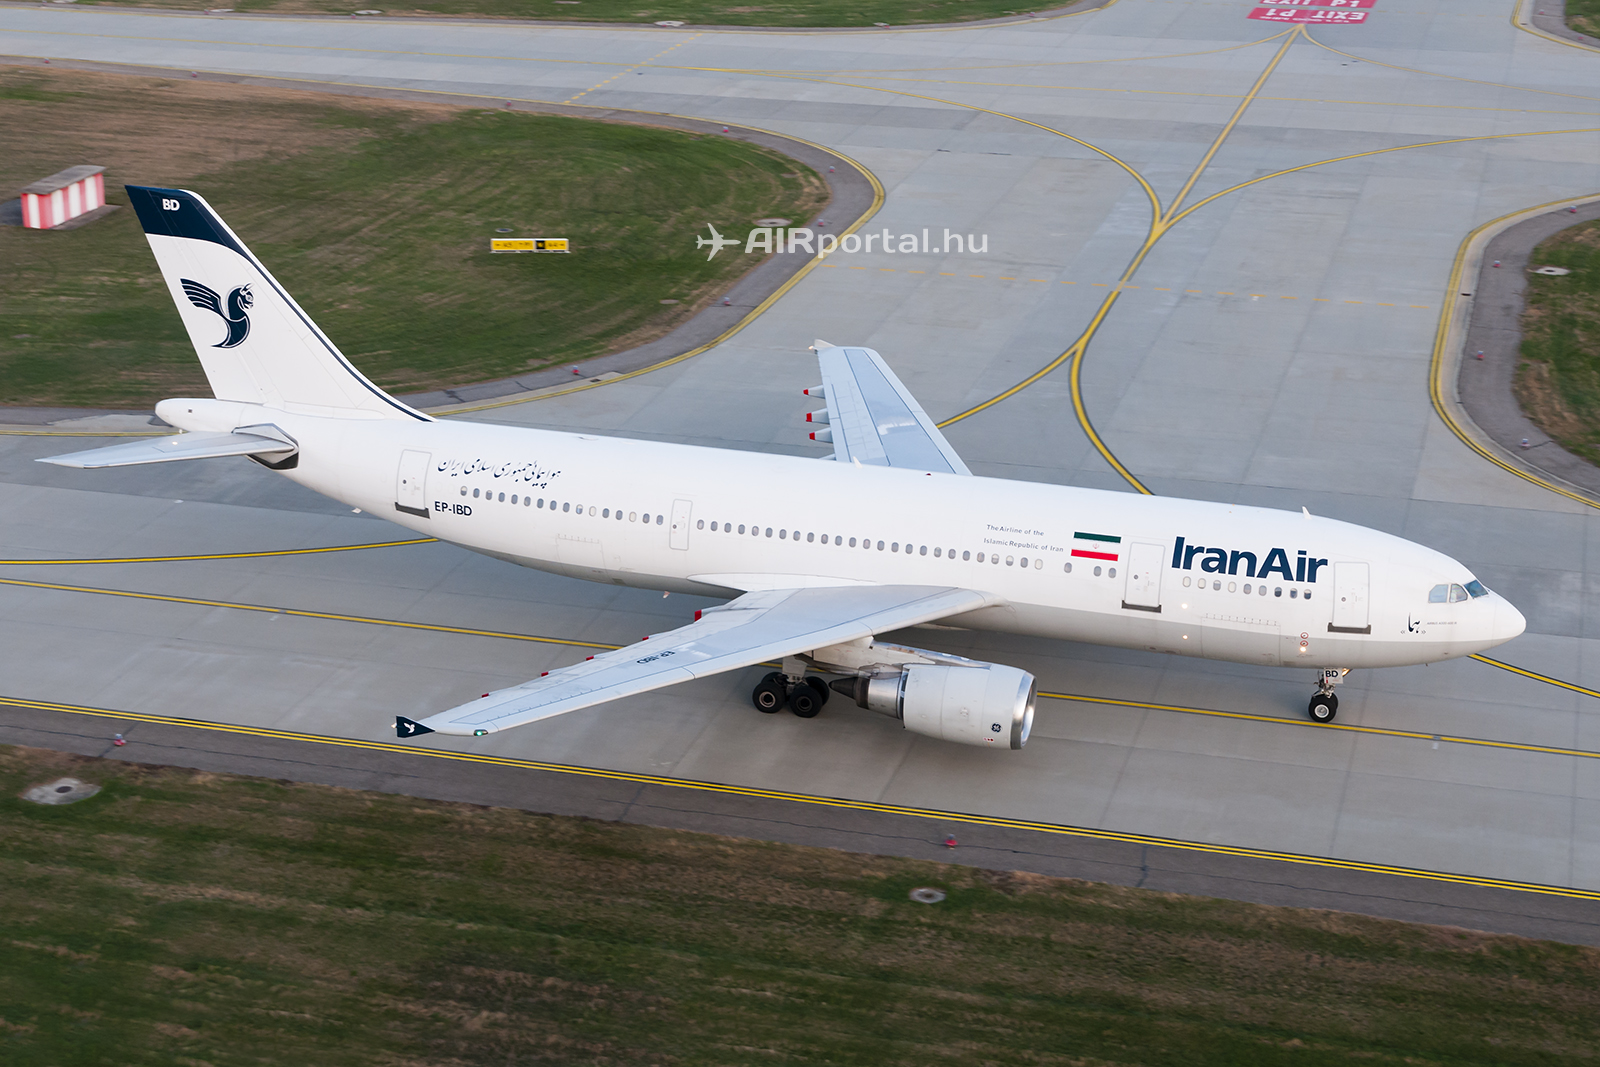 Az Iran Air Airbus A300-605R repülőgépe a Liszt Ferenc repülőtéren. (Fotó: Bodorics Tamás - AIRportal.hu) | © AIRportal.hu